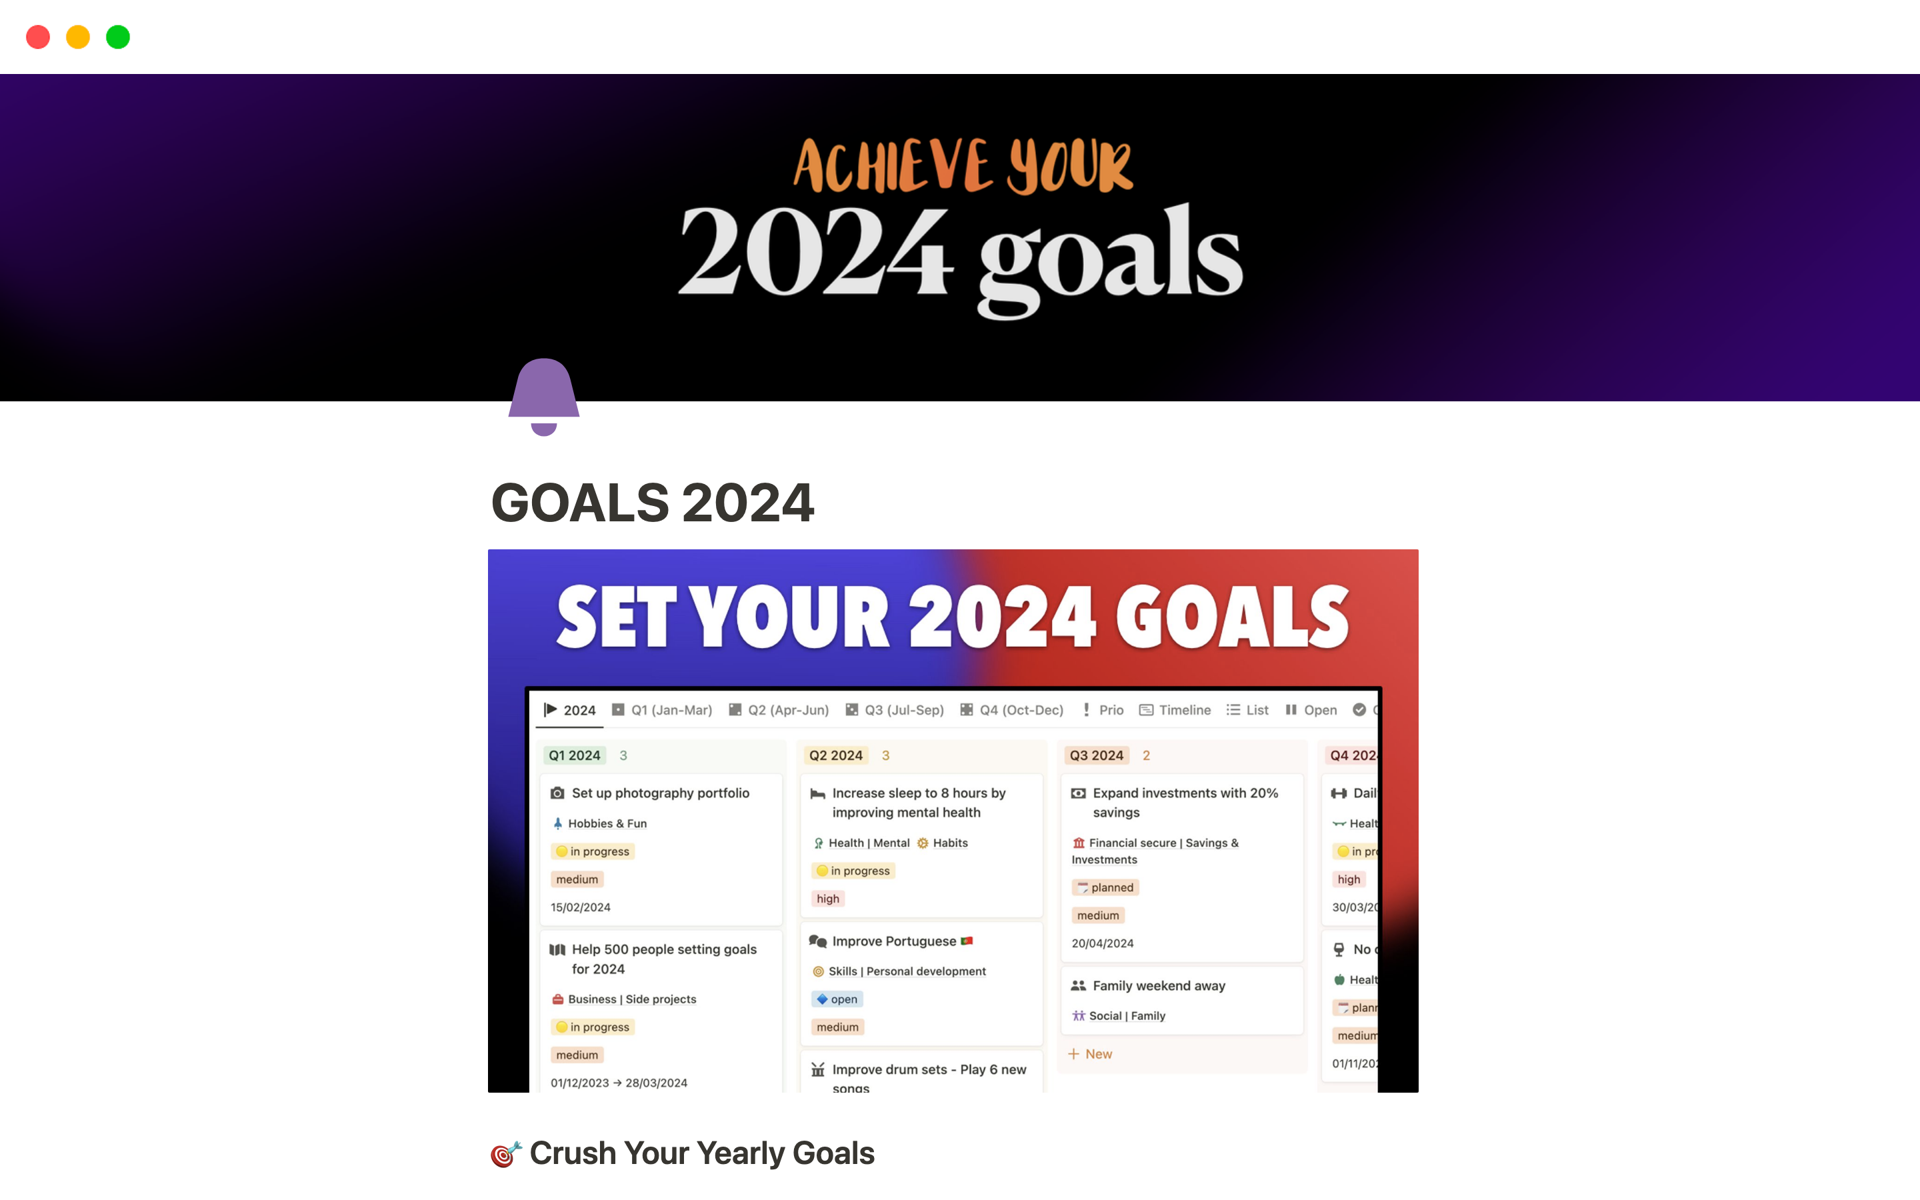 Aperçu du modèle de Goals 2024